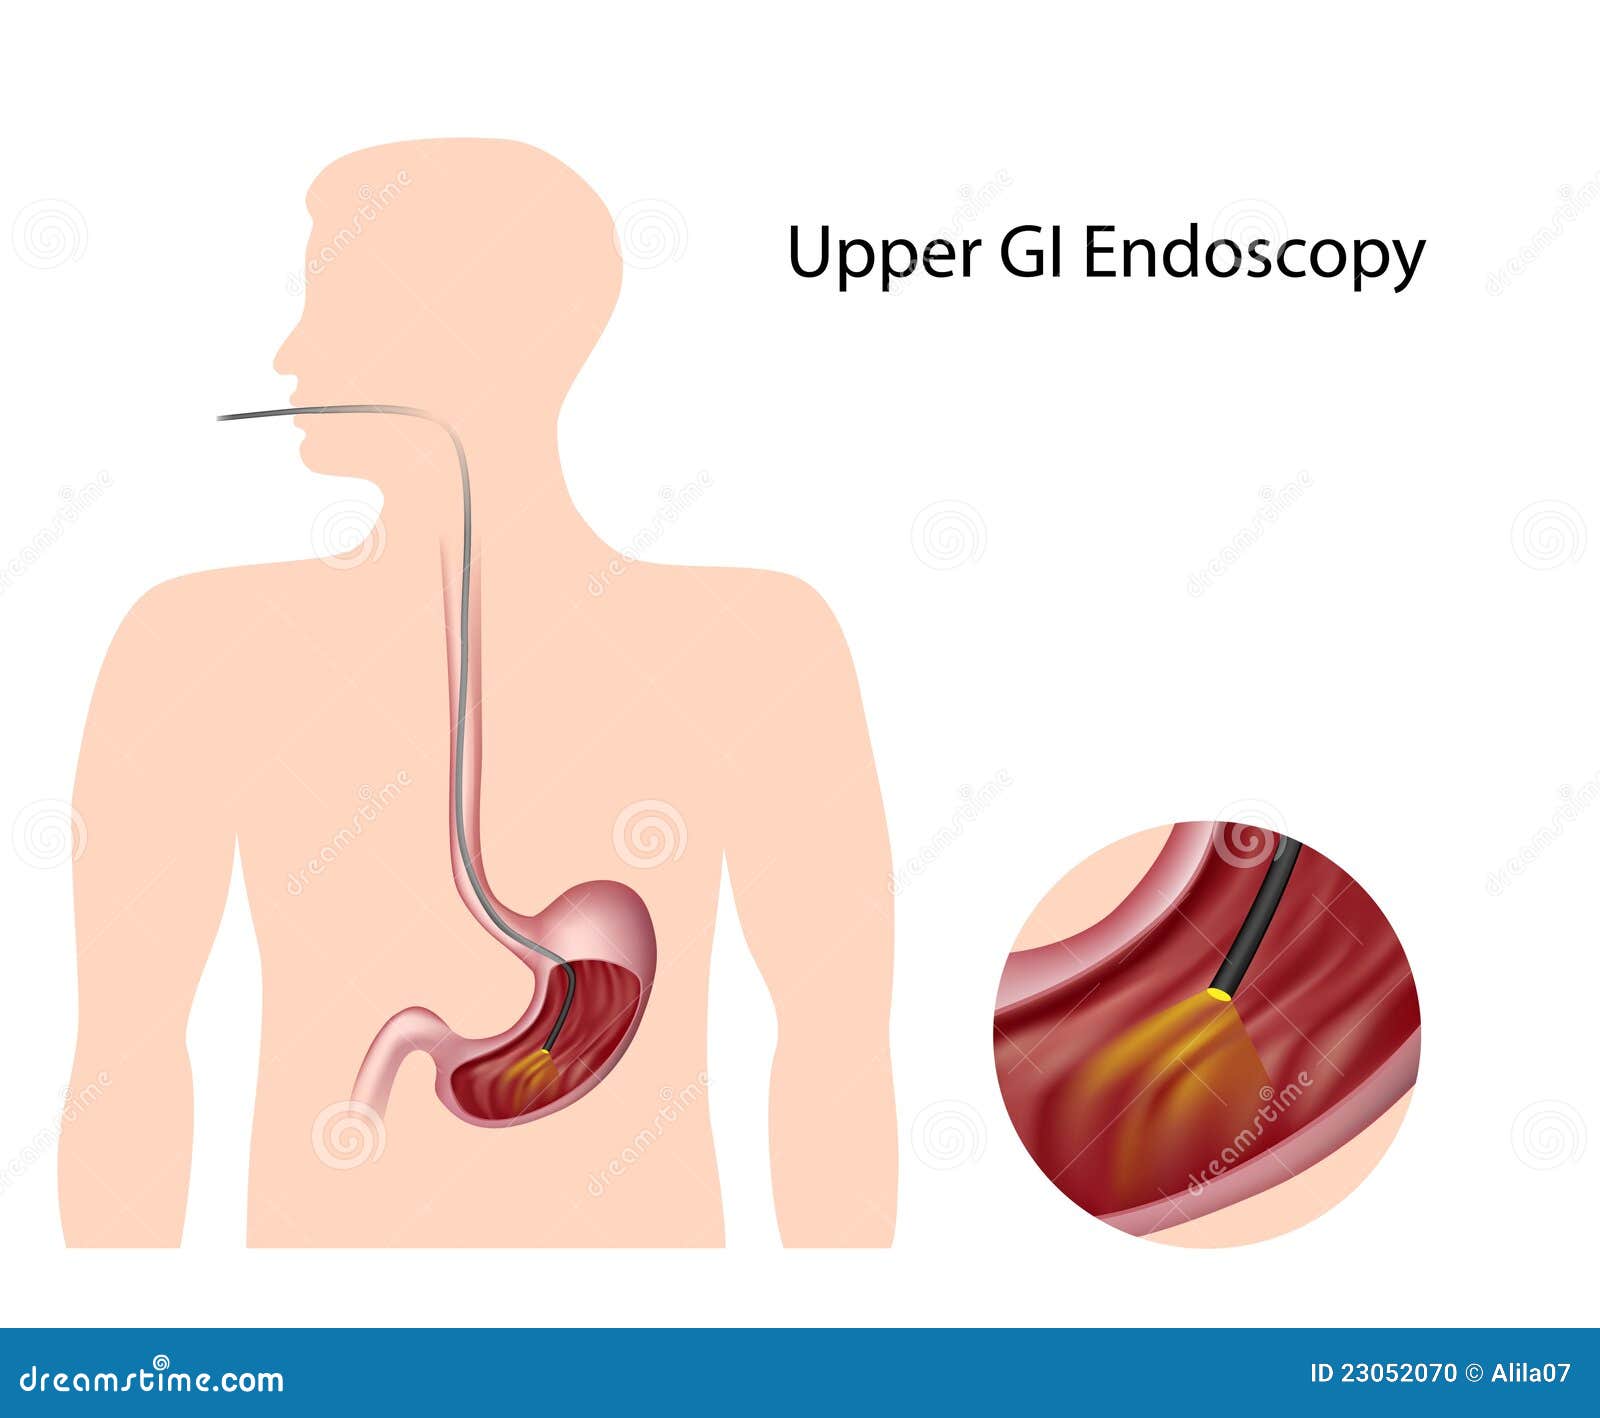 Пищевод открывается в желудок. Гастроскопия желудка гастрит. Эндоскопия пищевода и желудка. Язва желудка гастроскопия.